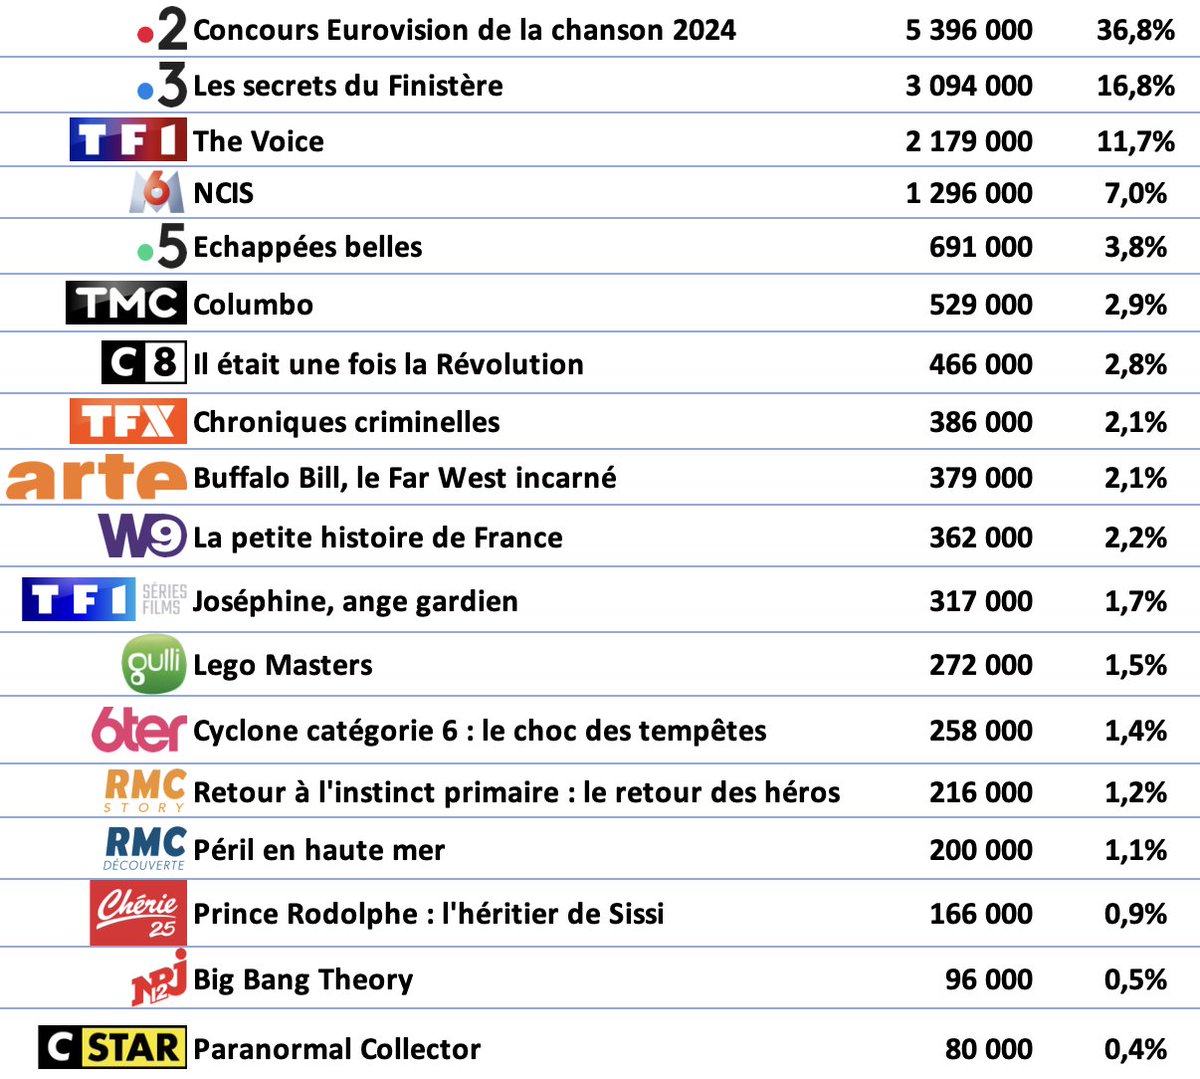 📺📈#Audiences #Prime #Télé du samedi 11 mai
1• #France2: #Eurovision2024 : 5,4M (36,8%PdA)
2• #France3: Les secrets du Finistère : 3,1M (16,8%PdA)
3• #TF1: #TheVoice : 2,2M (11,7%PdA)
4• #M6: #NCIS : 1,3M (7%PdA)
5• #France5: Echappées belles : 691 000👤 (3,8%PdA)
6• #TMC:…